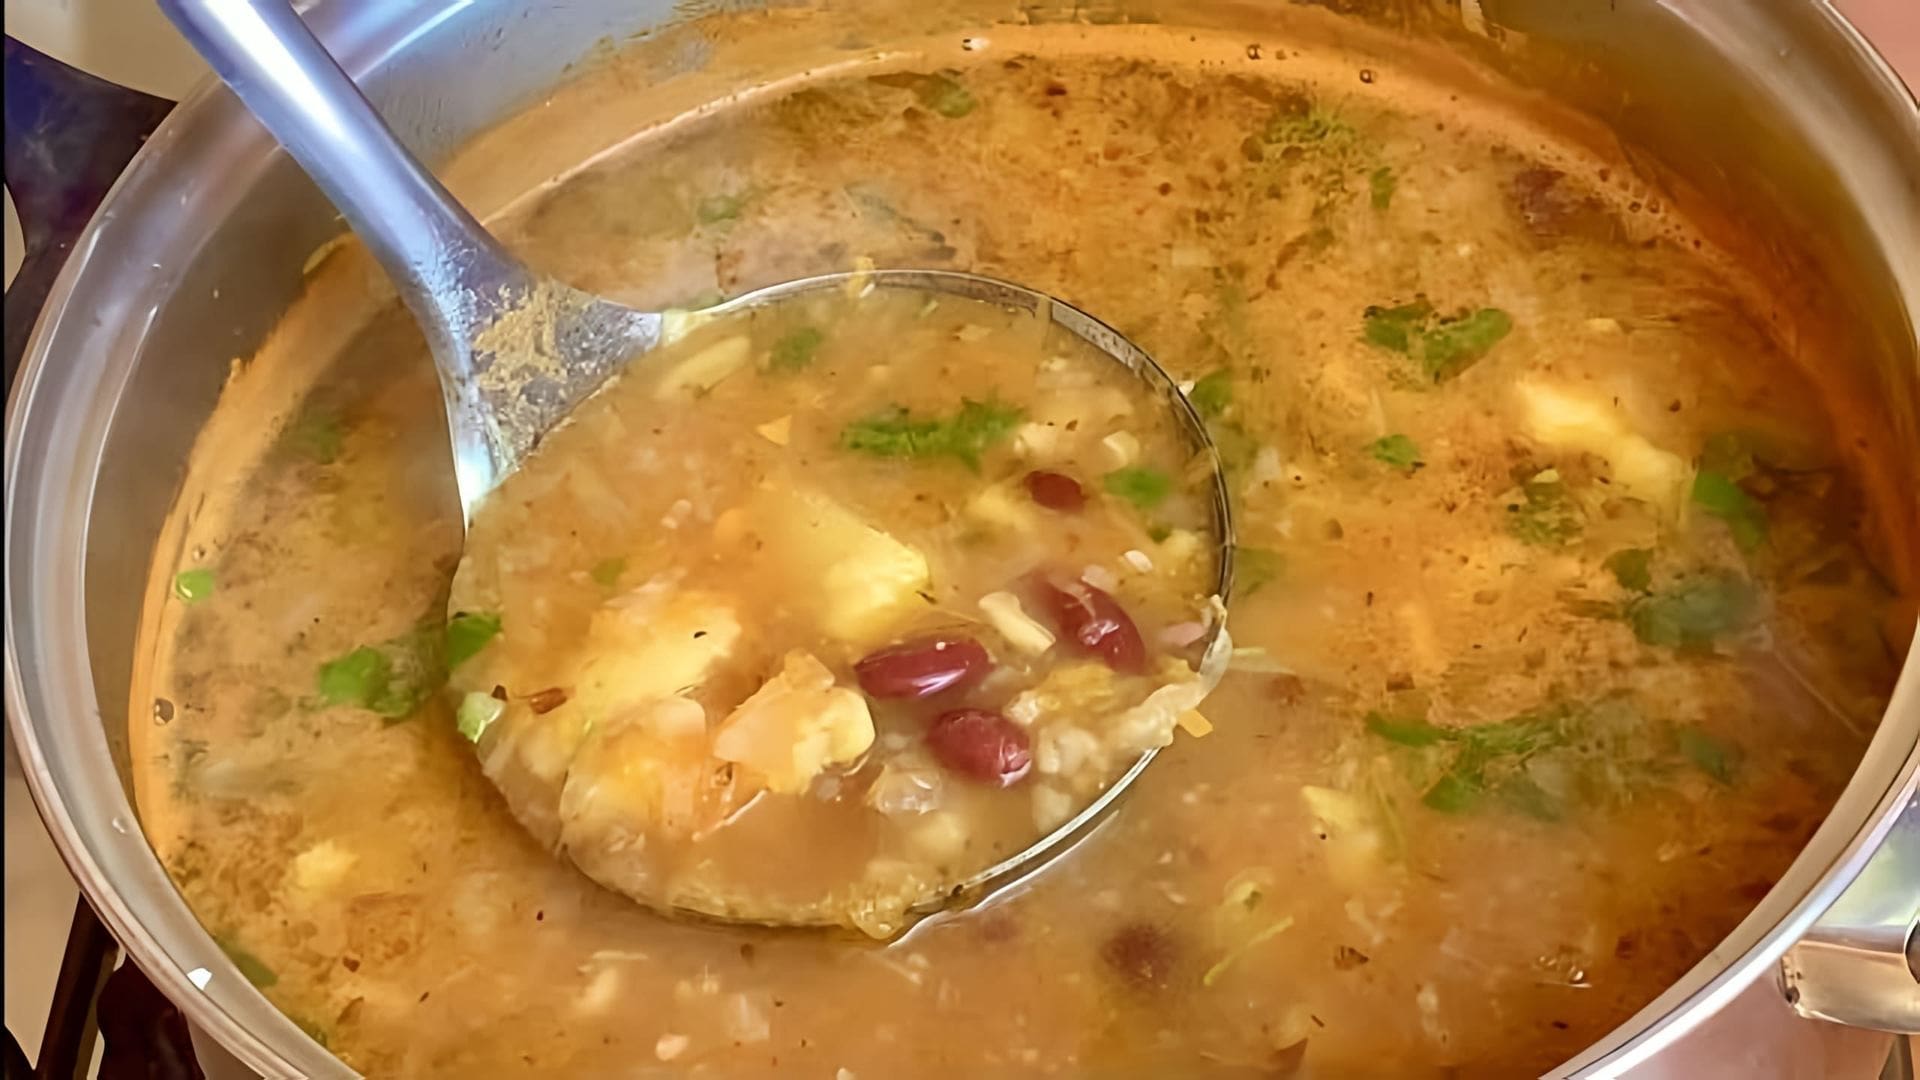 Видео как приготовить быстрый и вкусный бобовый суп, используя простые ингредиенты, такие как лук, морковь, картофель, бобы, чеснок и кинза